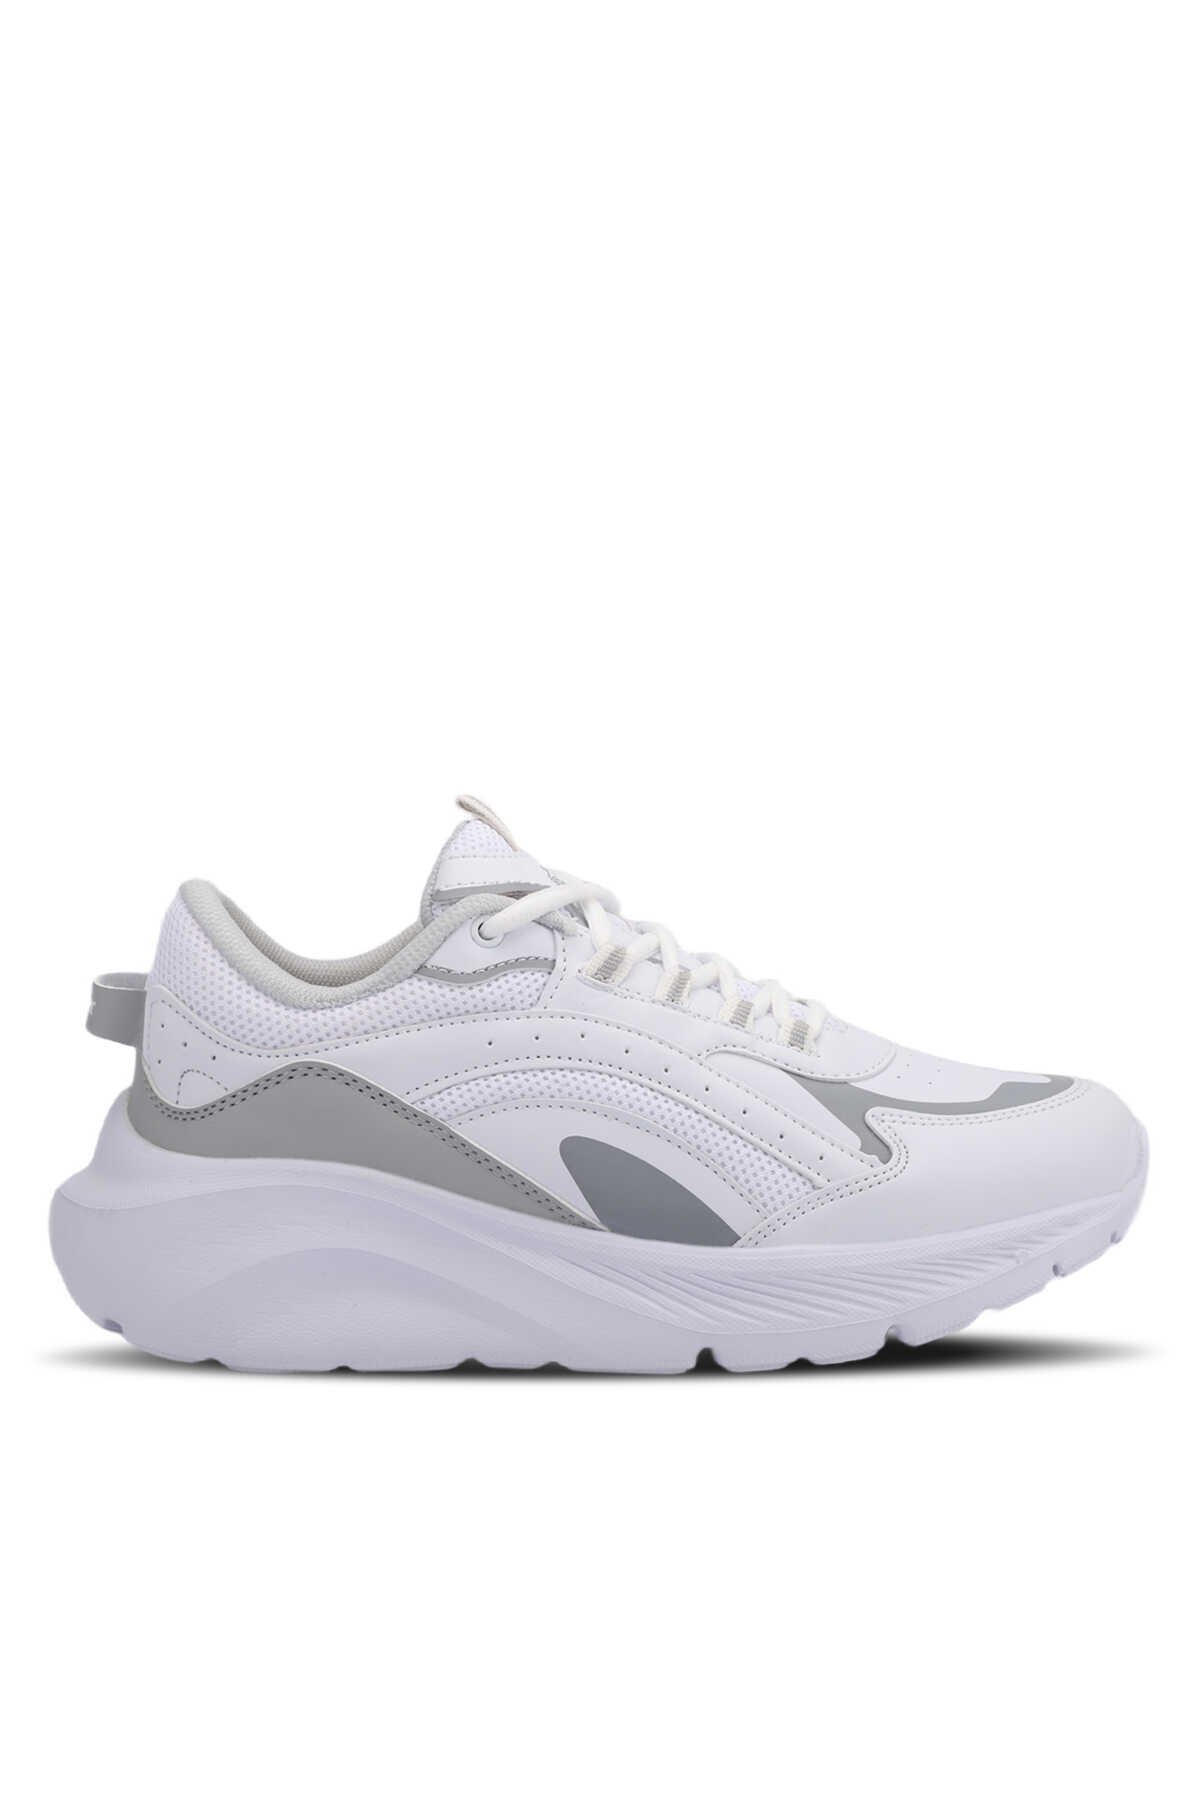 Slazenger - Slazenger BETHEL Sneaker Kadın Ayakkabı Beyaz / Gri